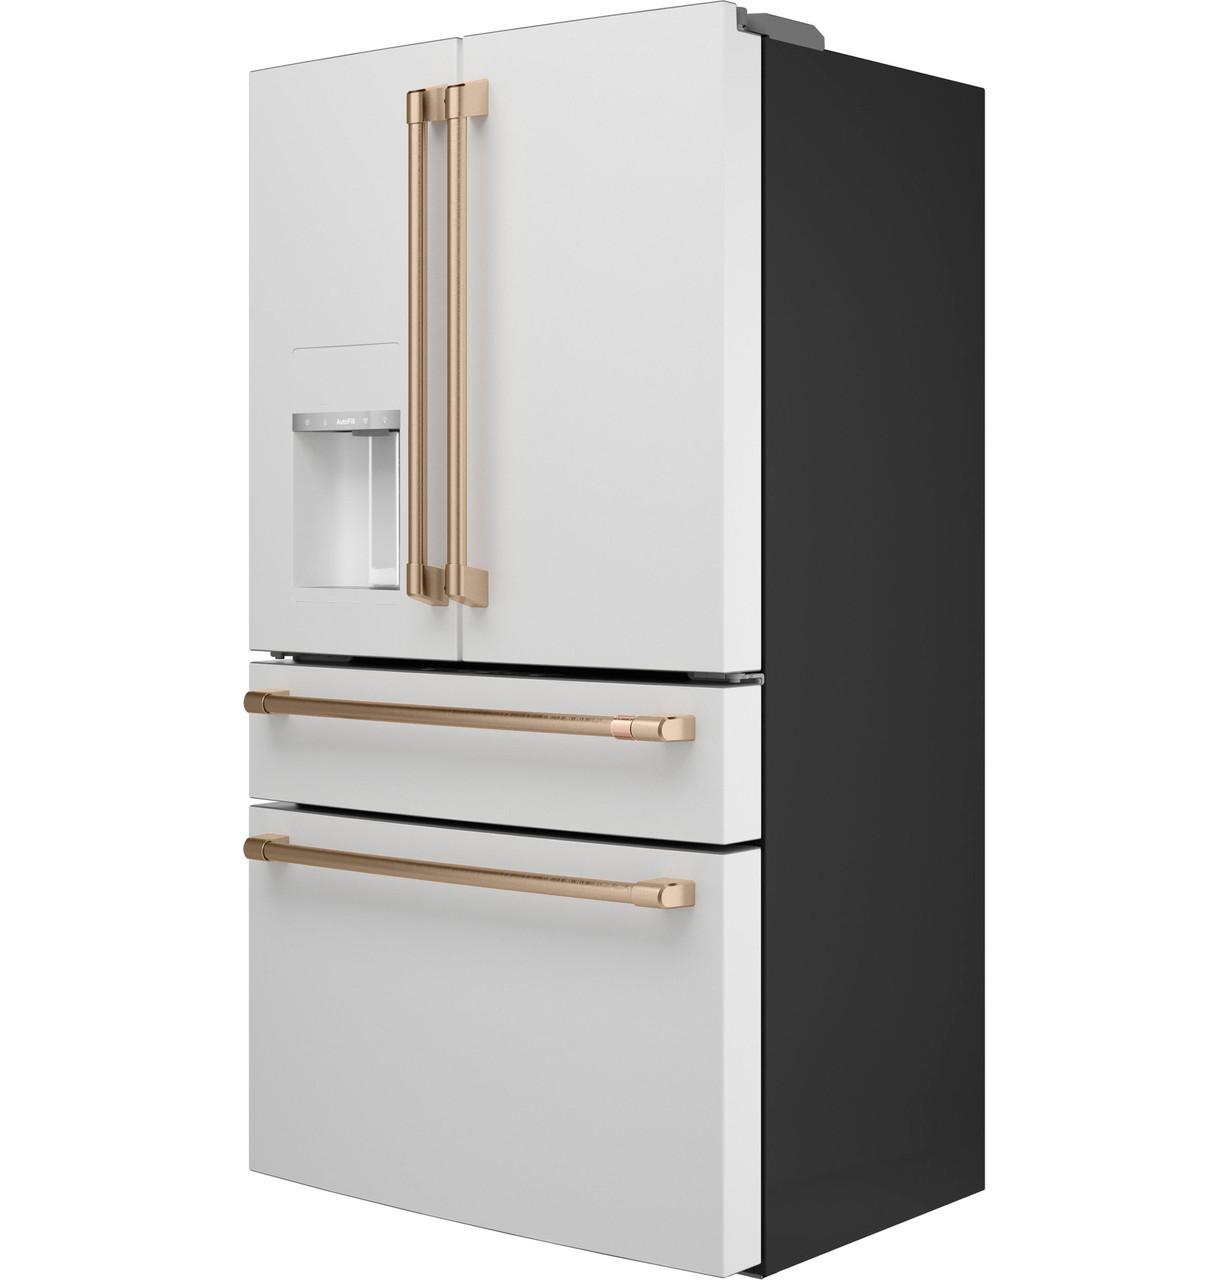 Cafe CXE22DP4PW2 Café&#8482; Energy Star® 22.3 Cu. Ft. Smart Counter-Depth 4-Door French-Door Refrigerator